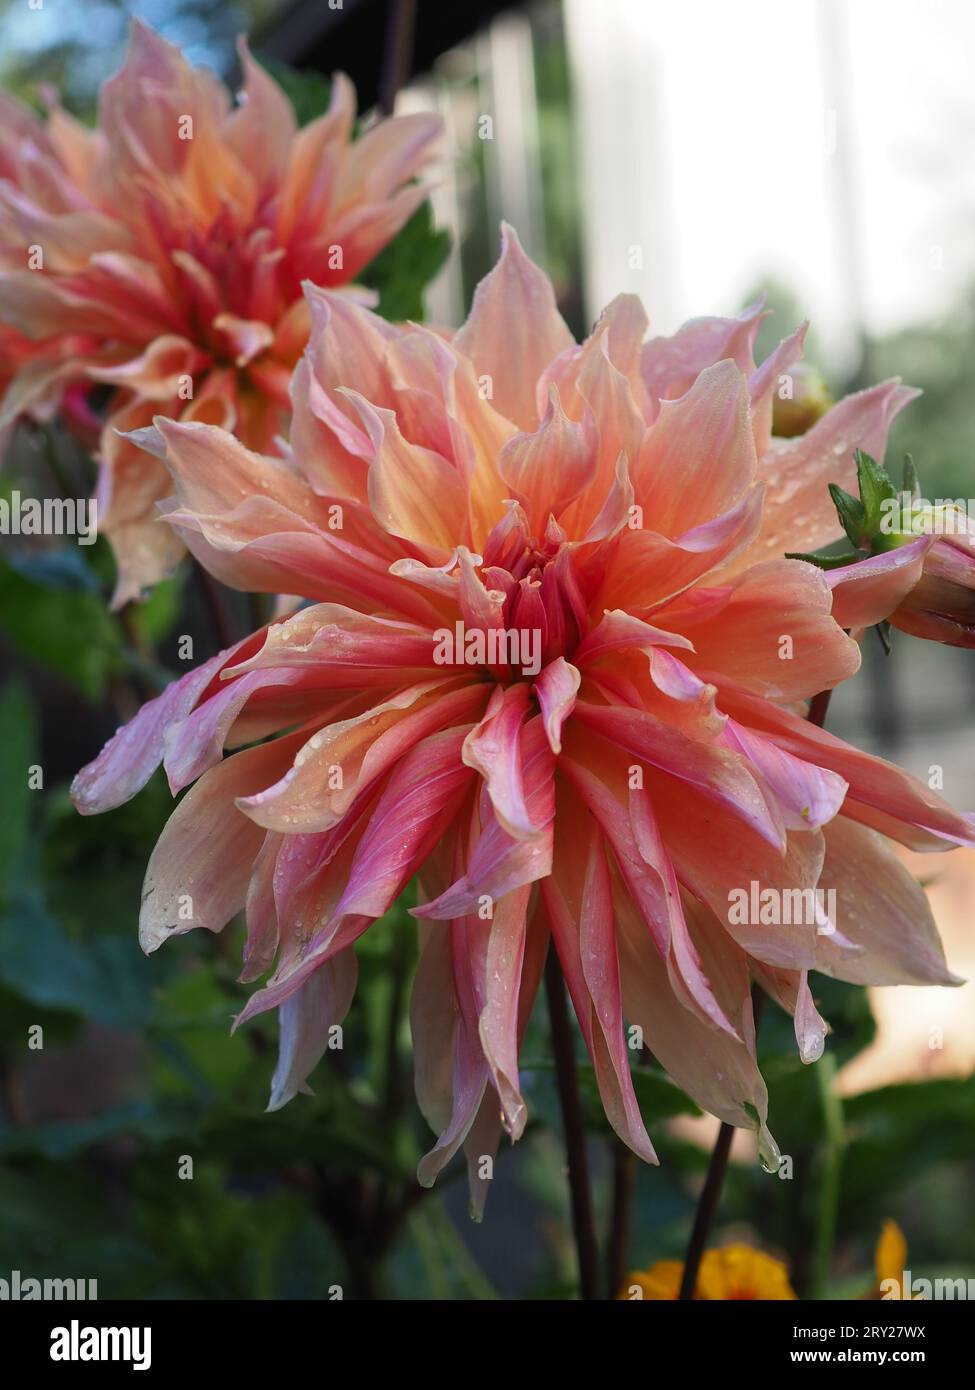 Primo piano dei fiori di Dahlia 'labirinto' leggermente maledetti in un giardino britannico dopo la pioggia che mostra i loro petali rosa e arancione striati Foto Stock